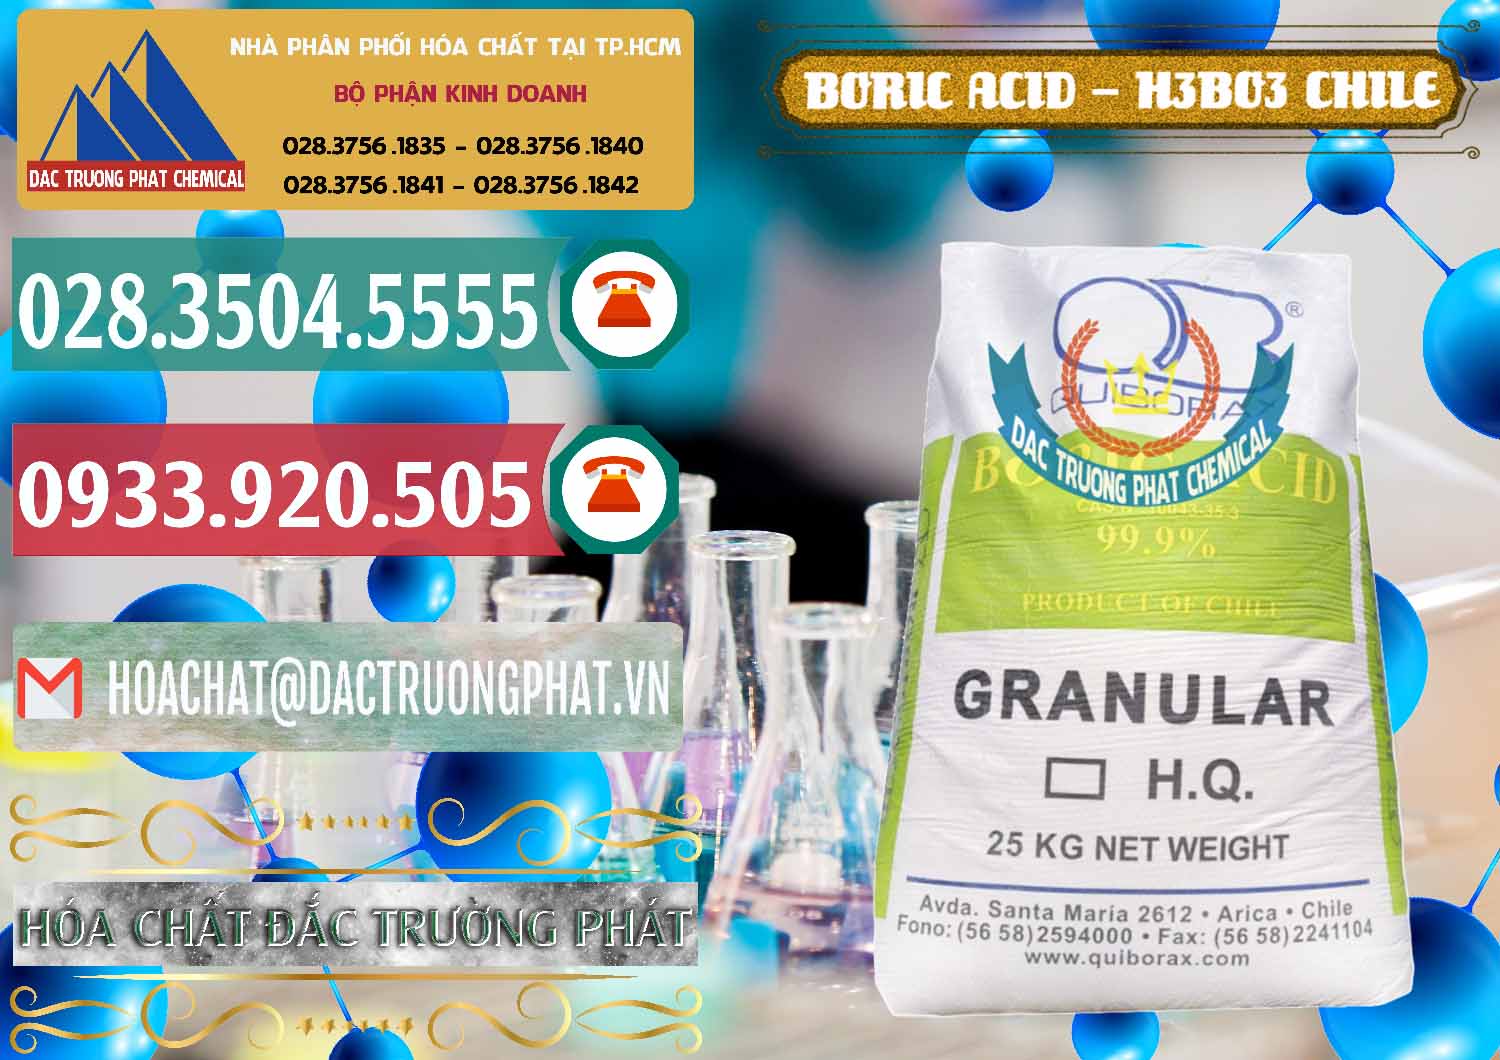 Nhà cung ứng và bán Acid Boric – Axit Boric H3BO3 99% Quiborax Chile - 0281 - Cty chuyên cung cấp & kinh doanh hóa chất tại TP.HCM - muabanhoachat.vn